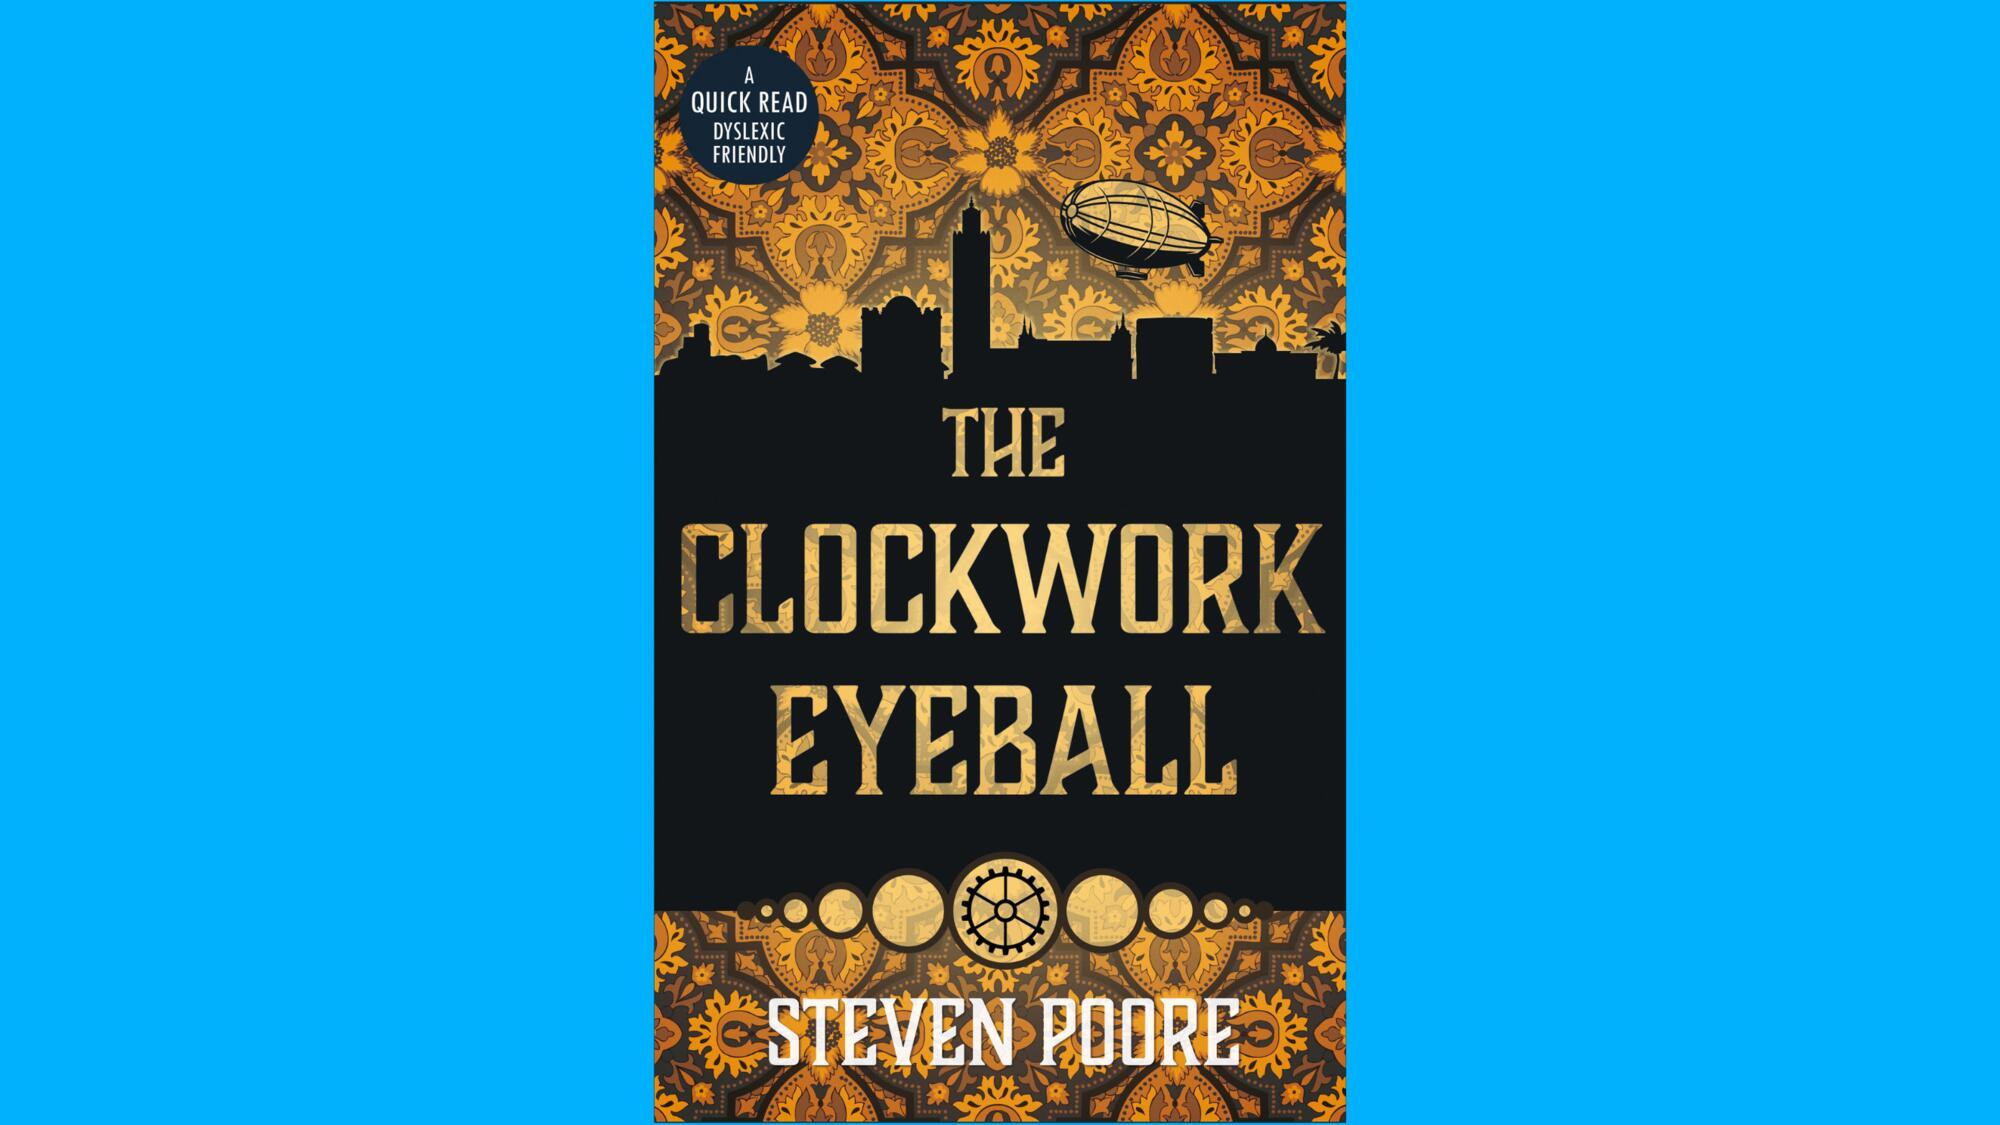 The Clockwork Eyeball by Steven Poore (book cover)